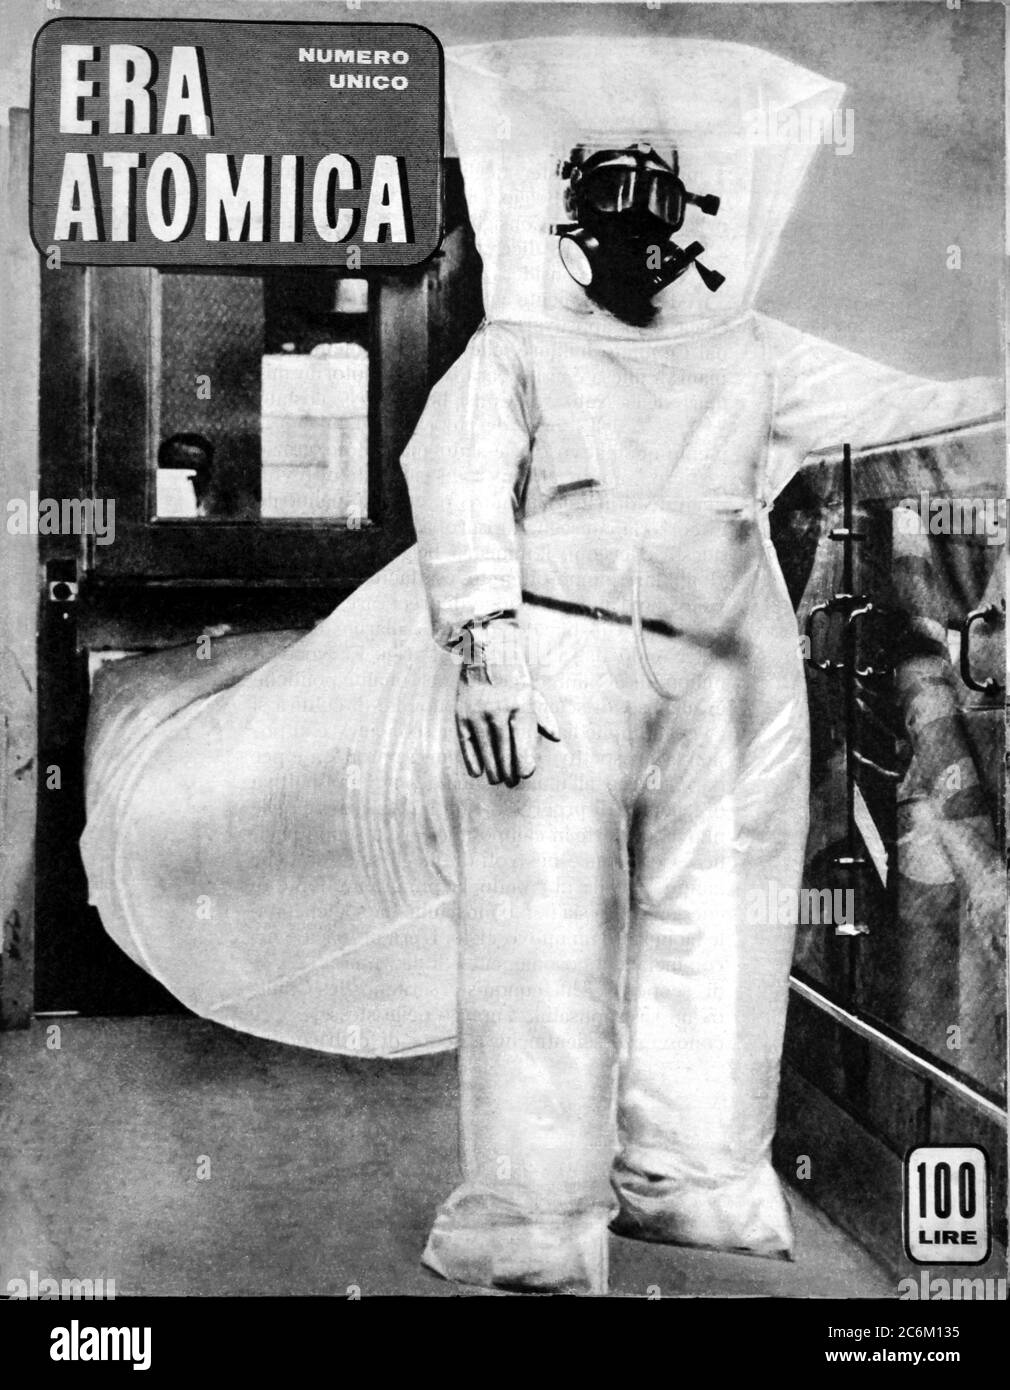 1955 , ITALIEN : Cover der italienischen illustrierten Zeitschrift ERA ATOMICA ( ATOMZEIT ) über die moderne ATOMZEIT des KALTEN KRIEGES, veröffentlicht von der italienischen kommunistischen Zeitschrift IL LAVORO ( von CGIL syndacate : Confederazione Generale Italiana del Lavoro ) für den Pazifismus und die Aufgabe der Nutzung der Atomenergie für den Krieg. - PACE - PACIFISMO - ENERGIA ATOMICA - ENERGIE - GUERRA FREDDA - ATTACCO ATOMICO NUCLEARE ENERGIA - ENERGIE - ATOMANGRIFF - BOMBA ATOMICA - FOTO STORICHE STORICA - GESCHICHTE FOTOS - BOMBE - GUERRA FREDDA - KALTER KRIEG - ATOMO - ENERGIA NUCLEARE - ATOMWAFFE - FUNGO atomico - radioattività Stockfoto